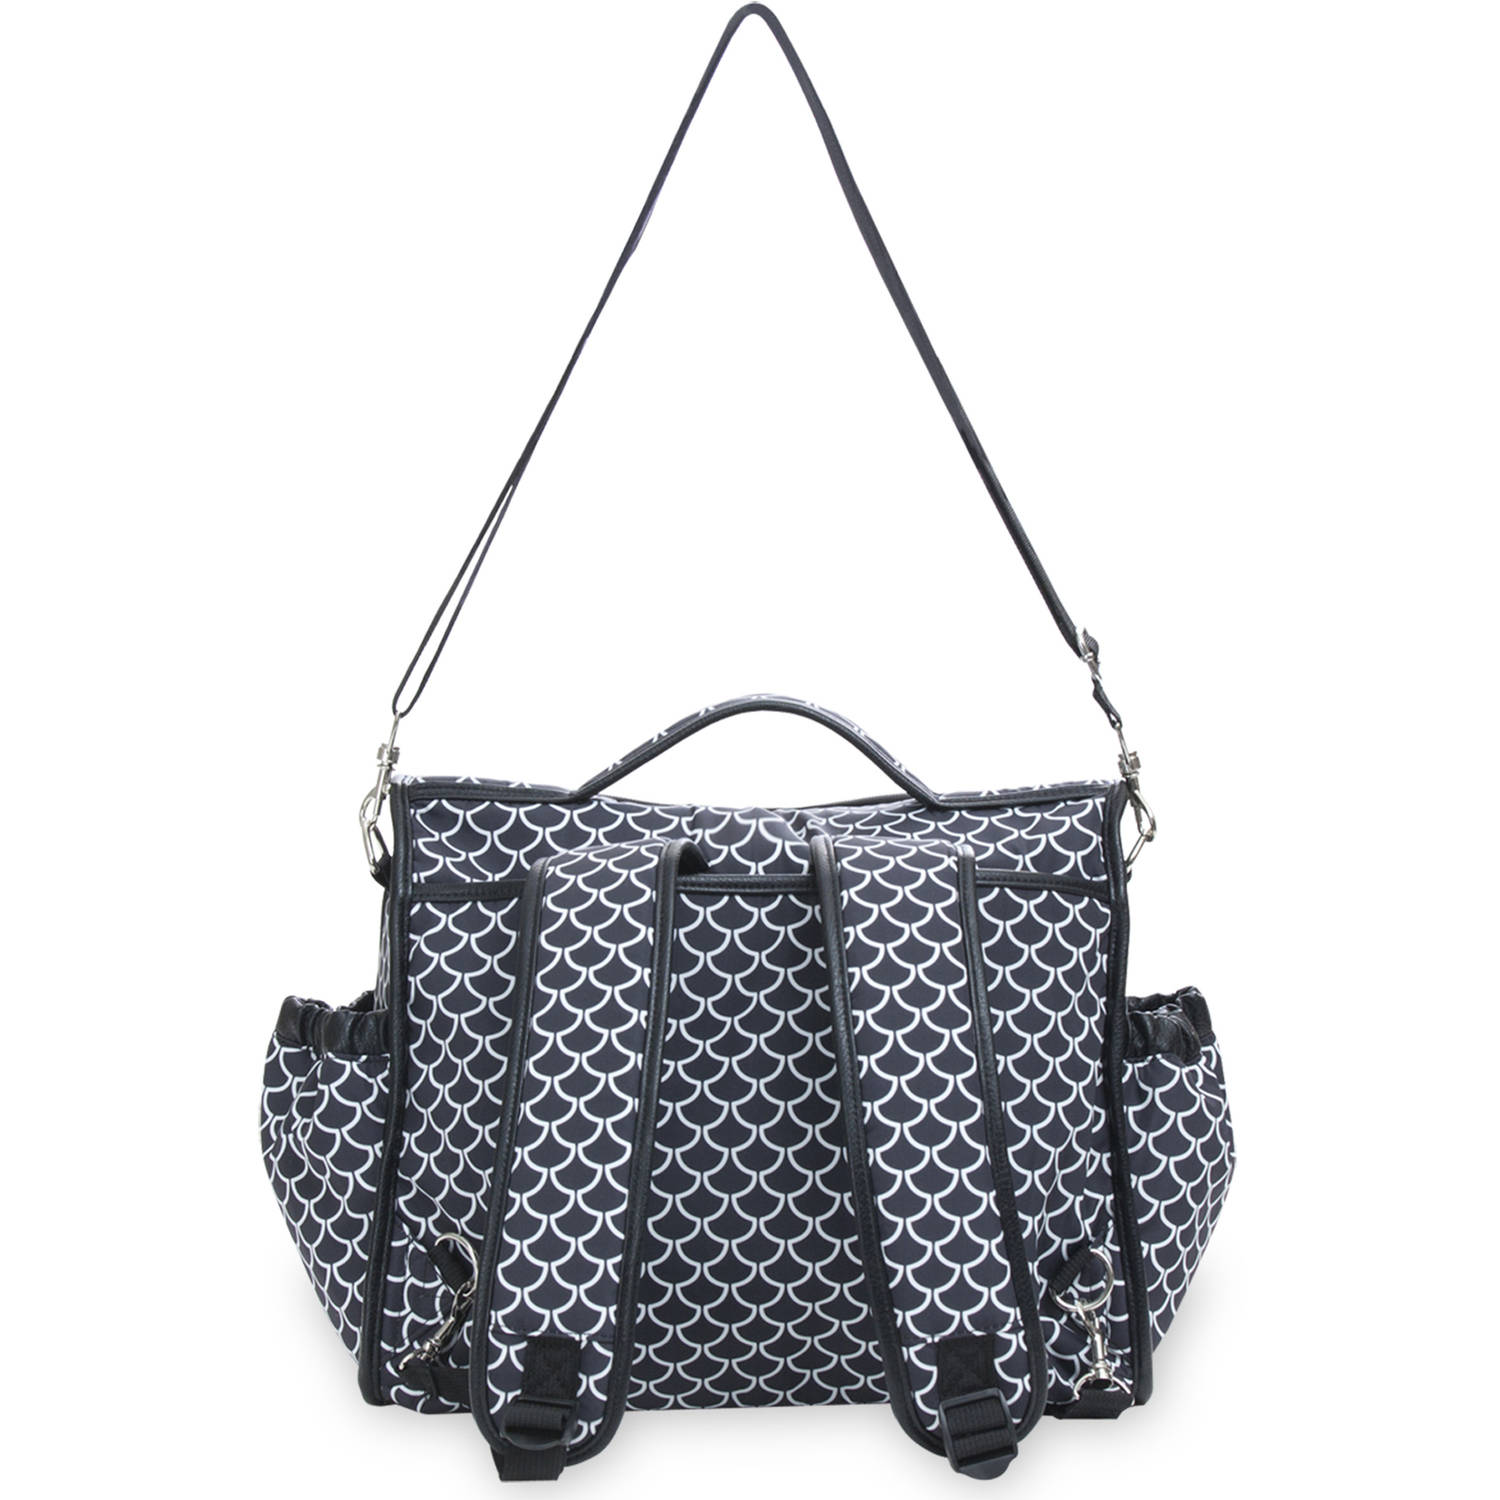 Bananafish Studio Adjustable Shoulder Strap Zipper Pockets Messenger Diaper Bag, Black and White - image 5 of 7